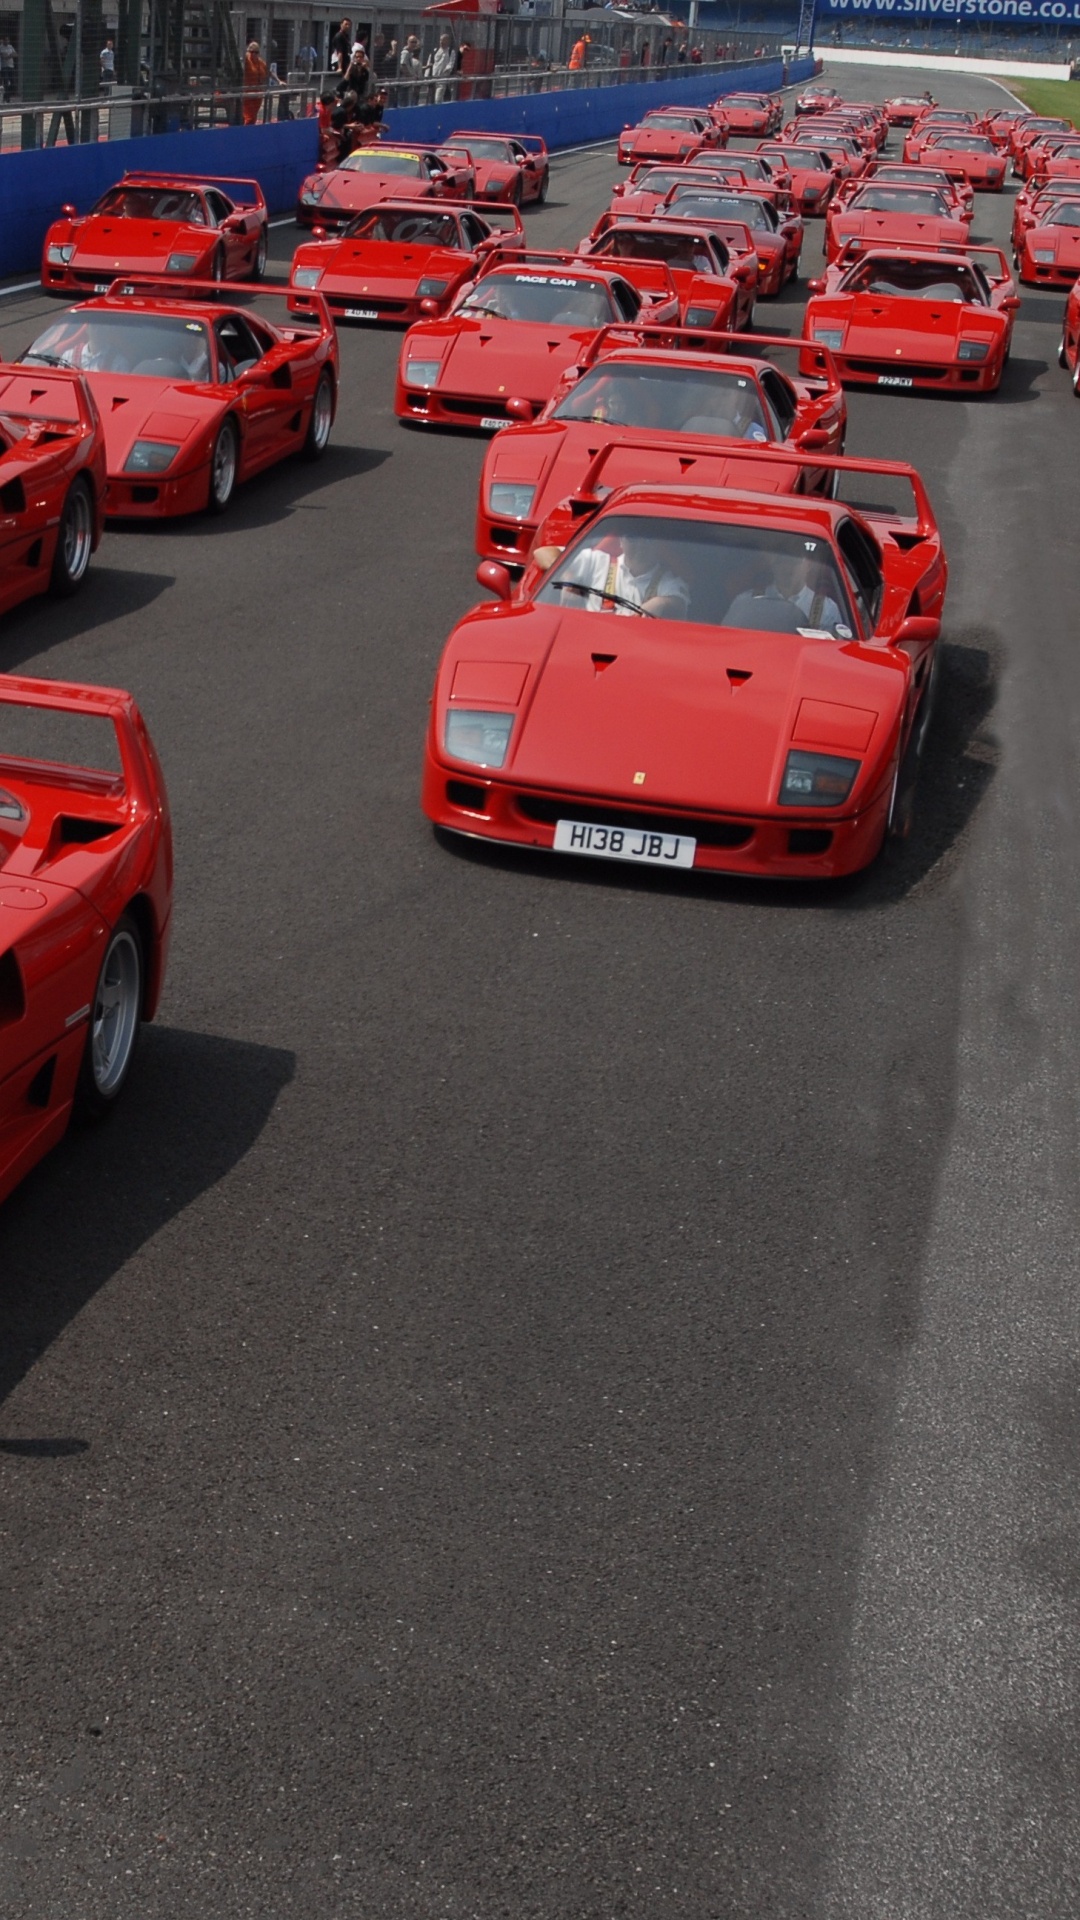 Coche Deportivo Ferrari Rojo Estacionado en el Estacionamiento Durante el Día. Wallpaper in 1080x1920 Resolution